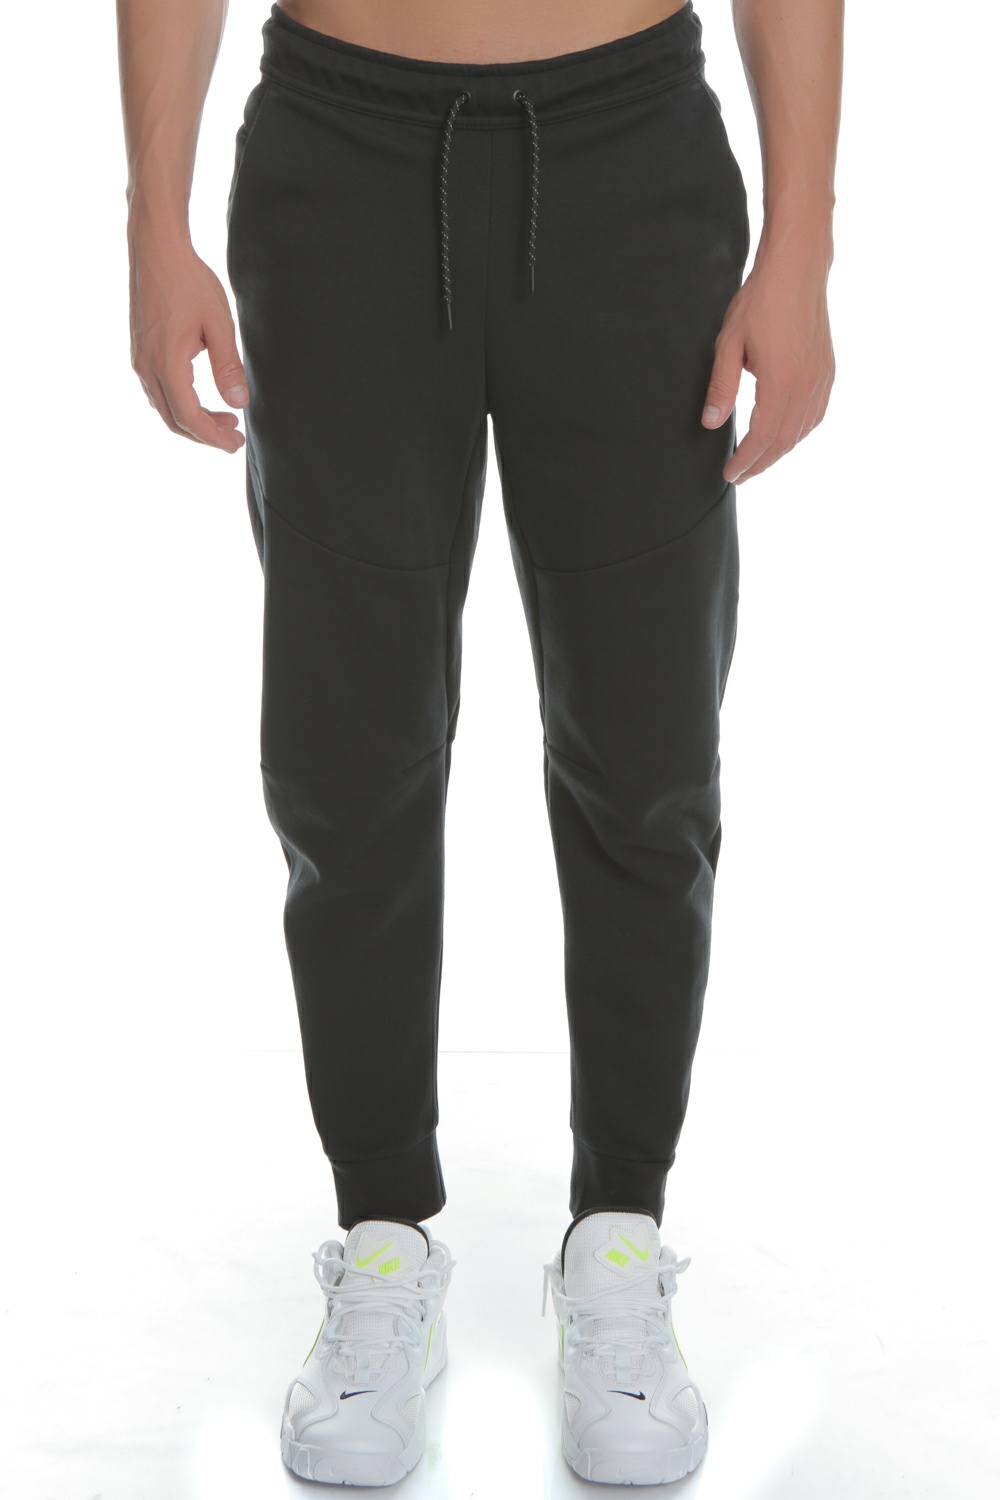 Ανδρικά/Ρούχα/Αθλητικά/Φόρμες NIKE - Ανδρικό παντελόνι φόρμας TCH FLC μαύρο